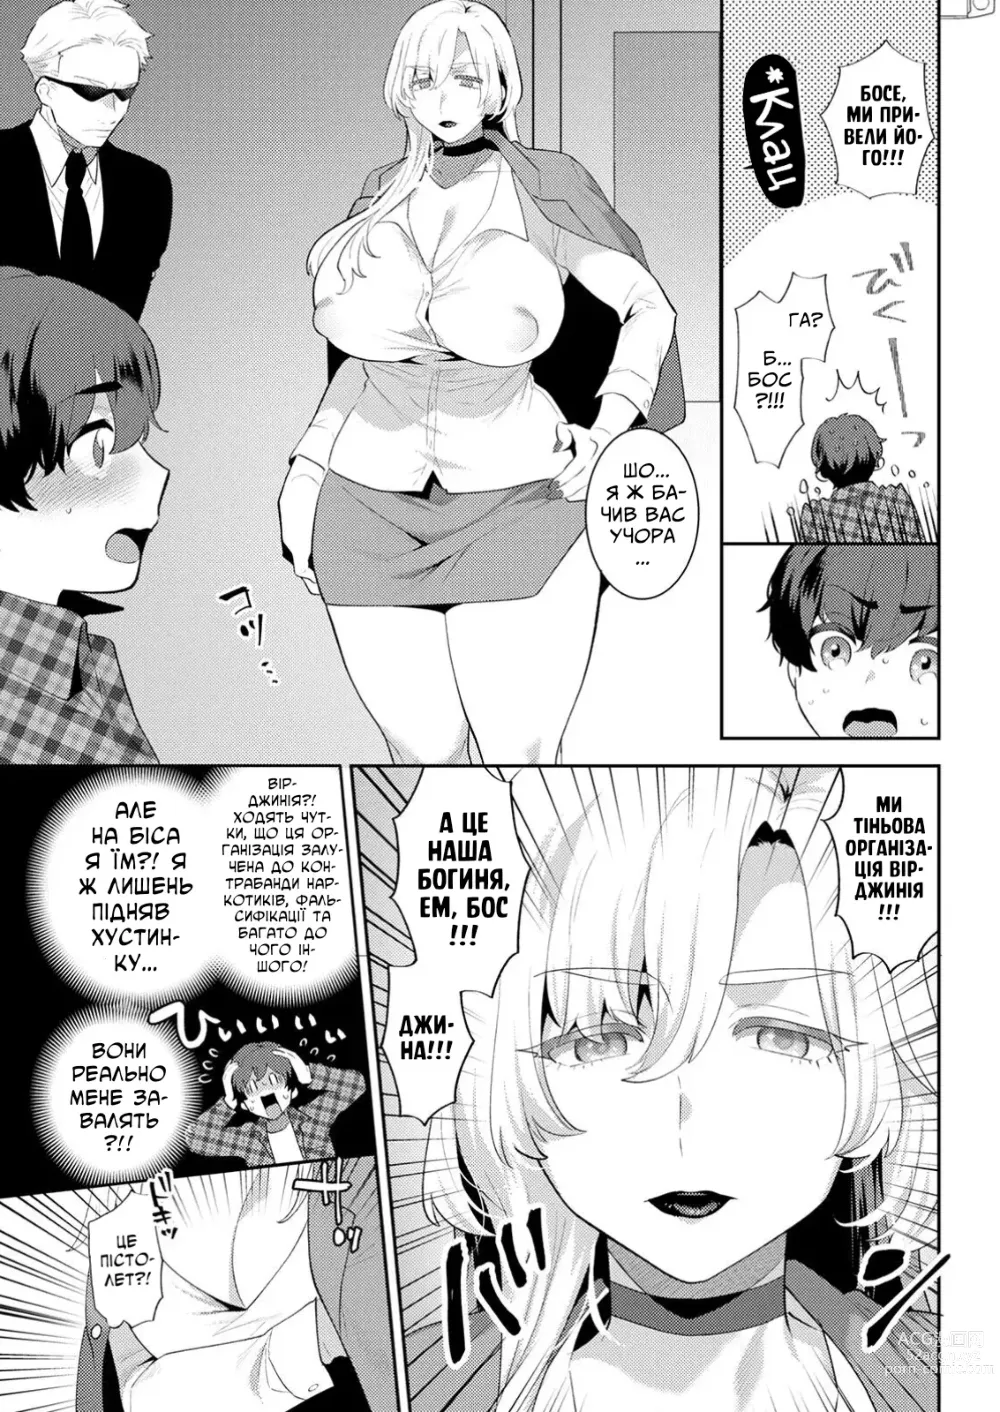 Page 3 of manga [Моґікі Хаямі] Я звичайний студент коледжу, але бос мафії шалено в мене закохана!!!